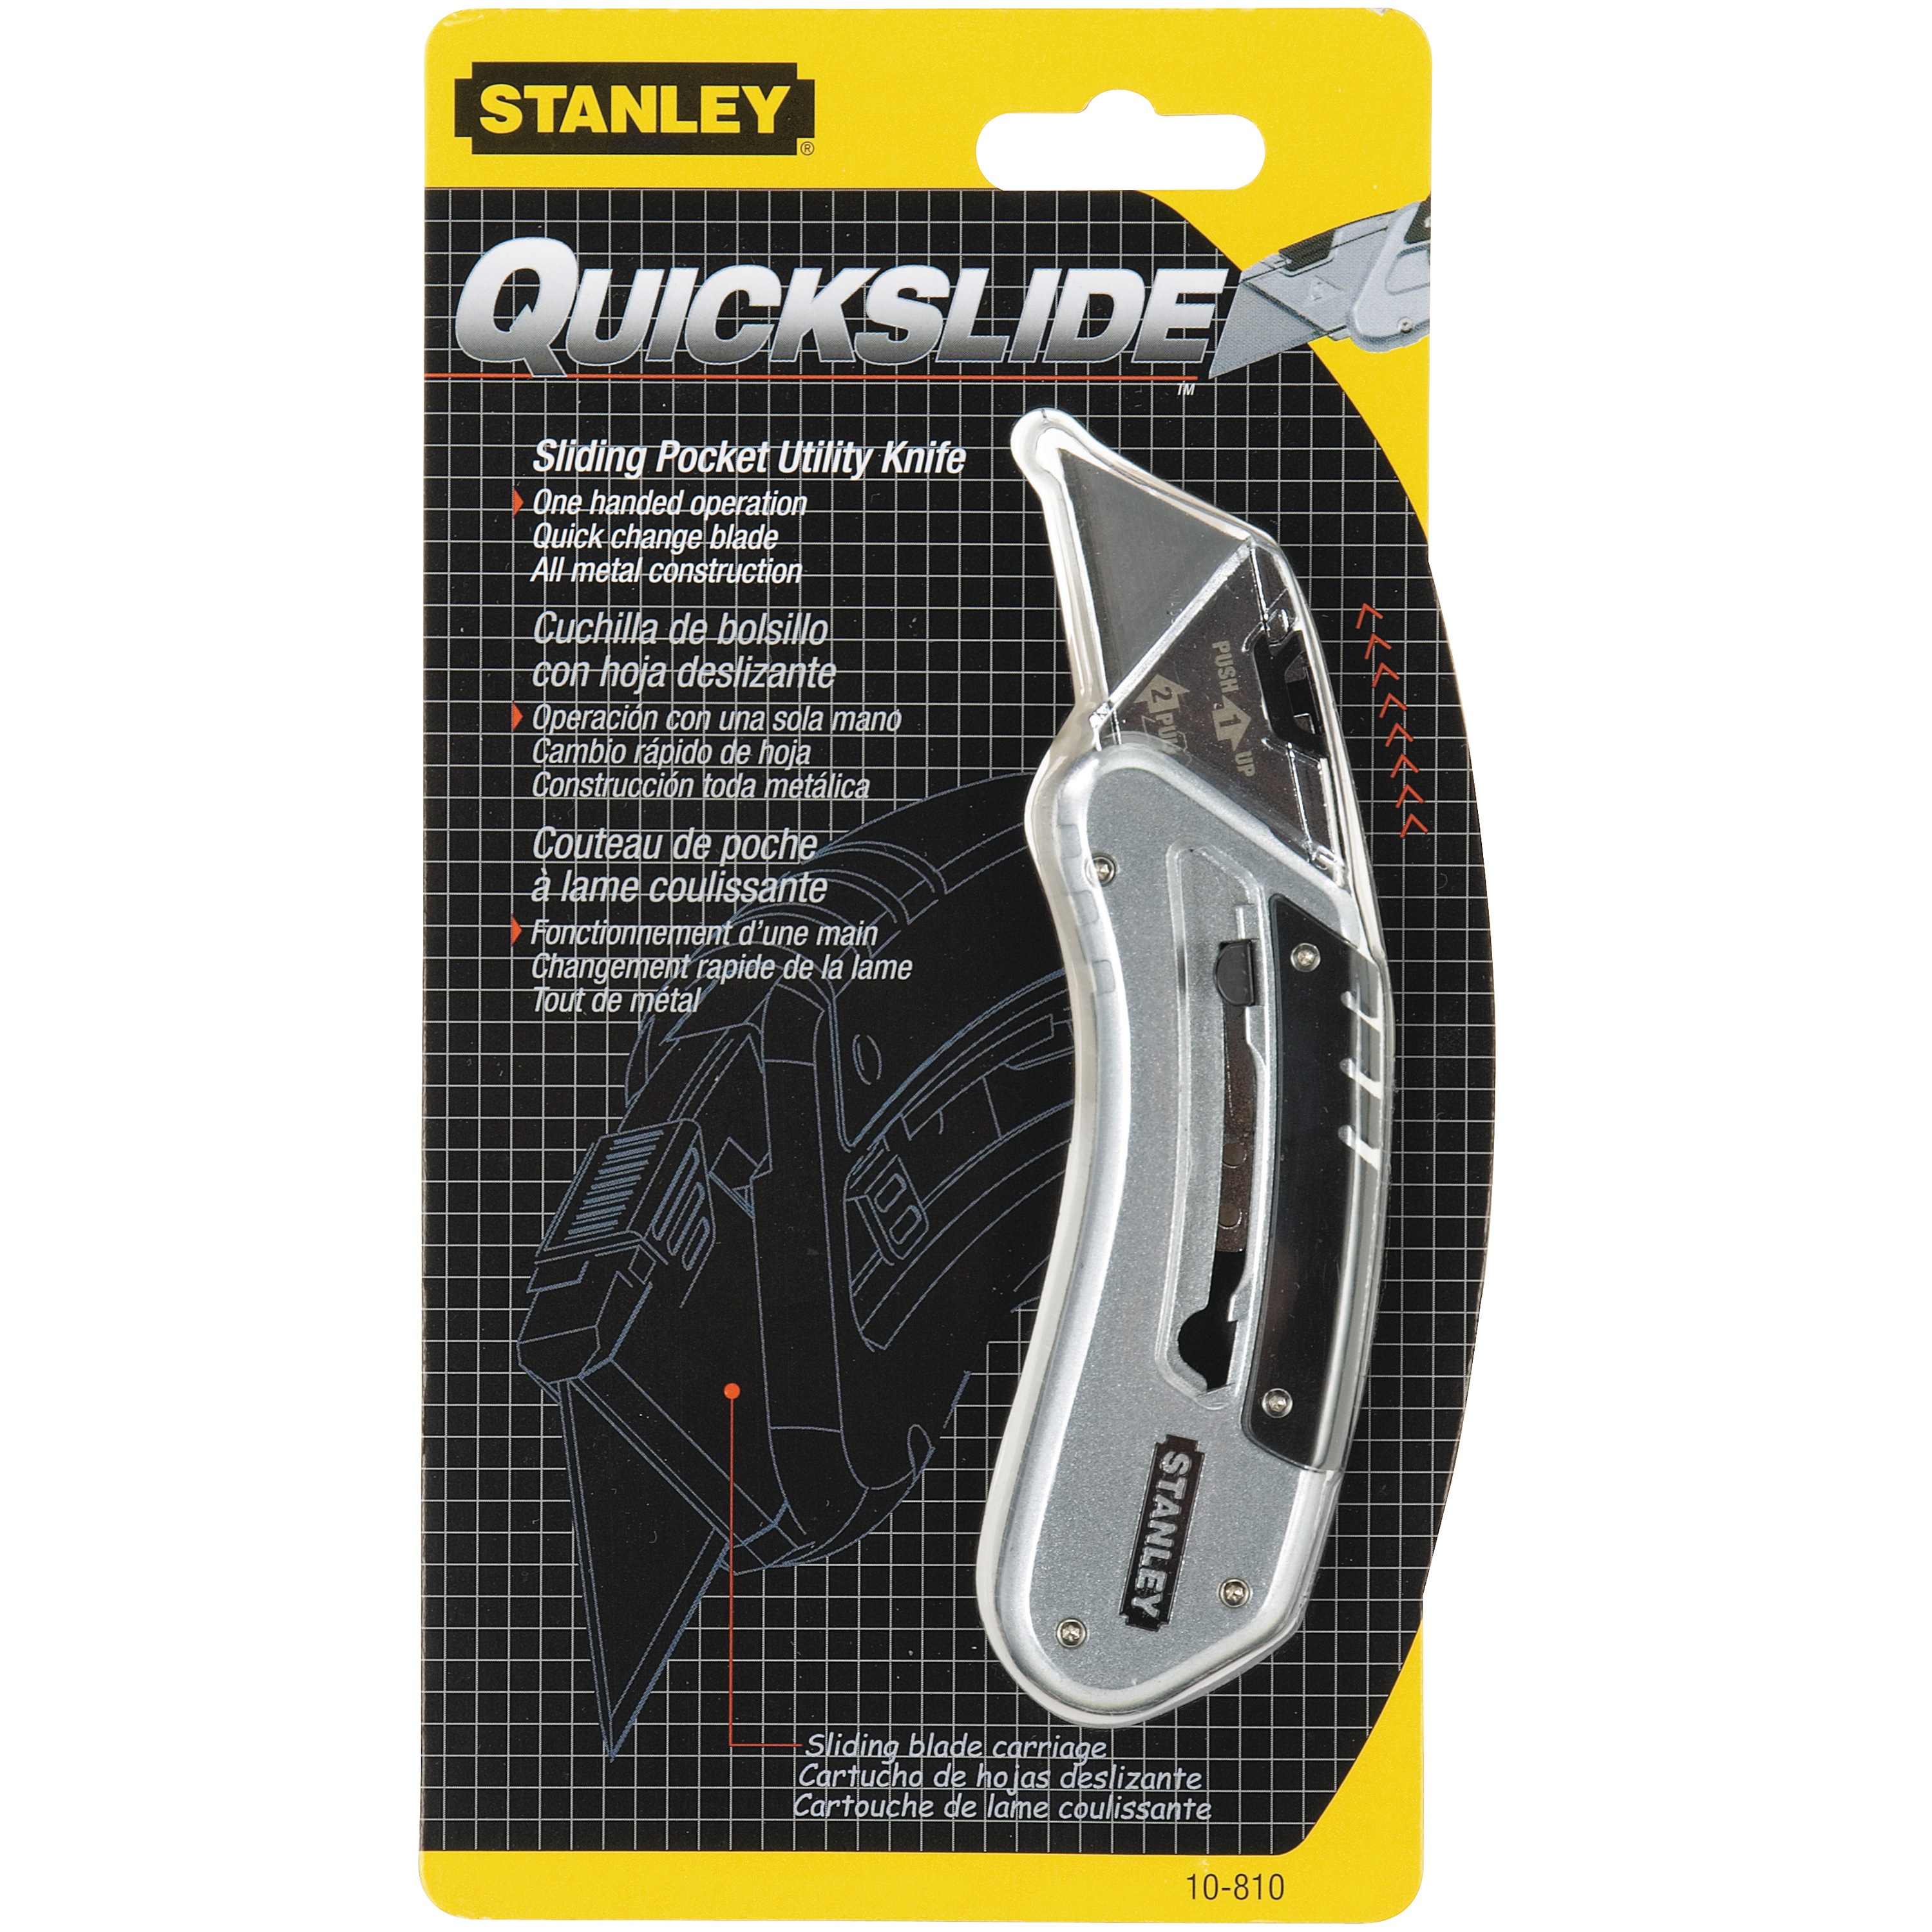 quickslide sliding pocket knife